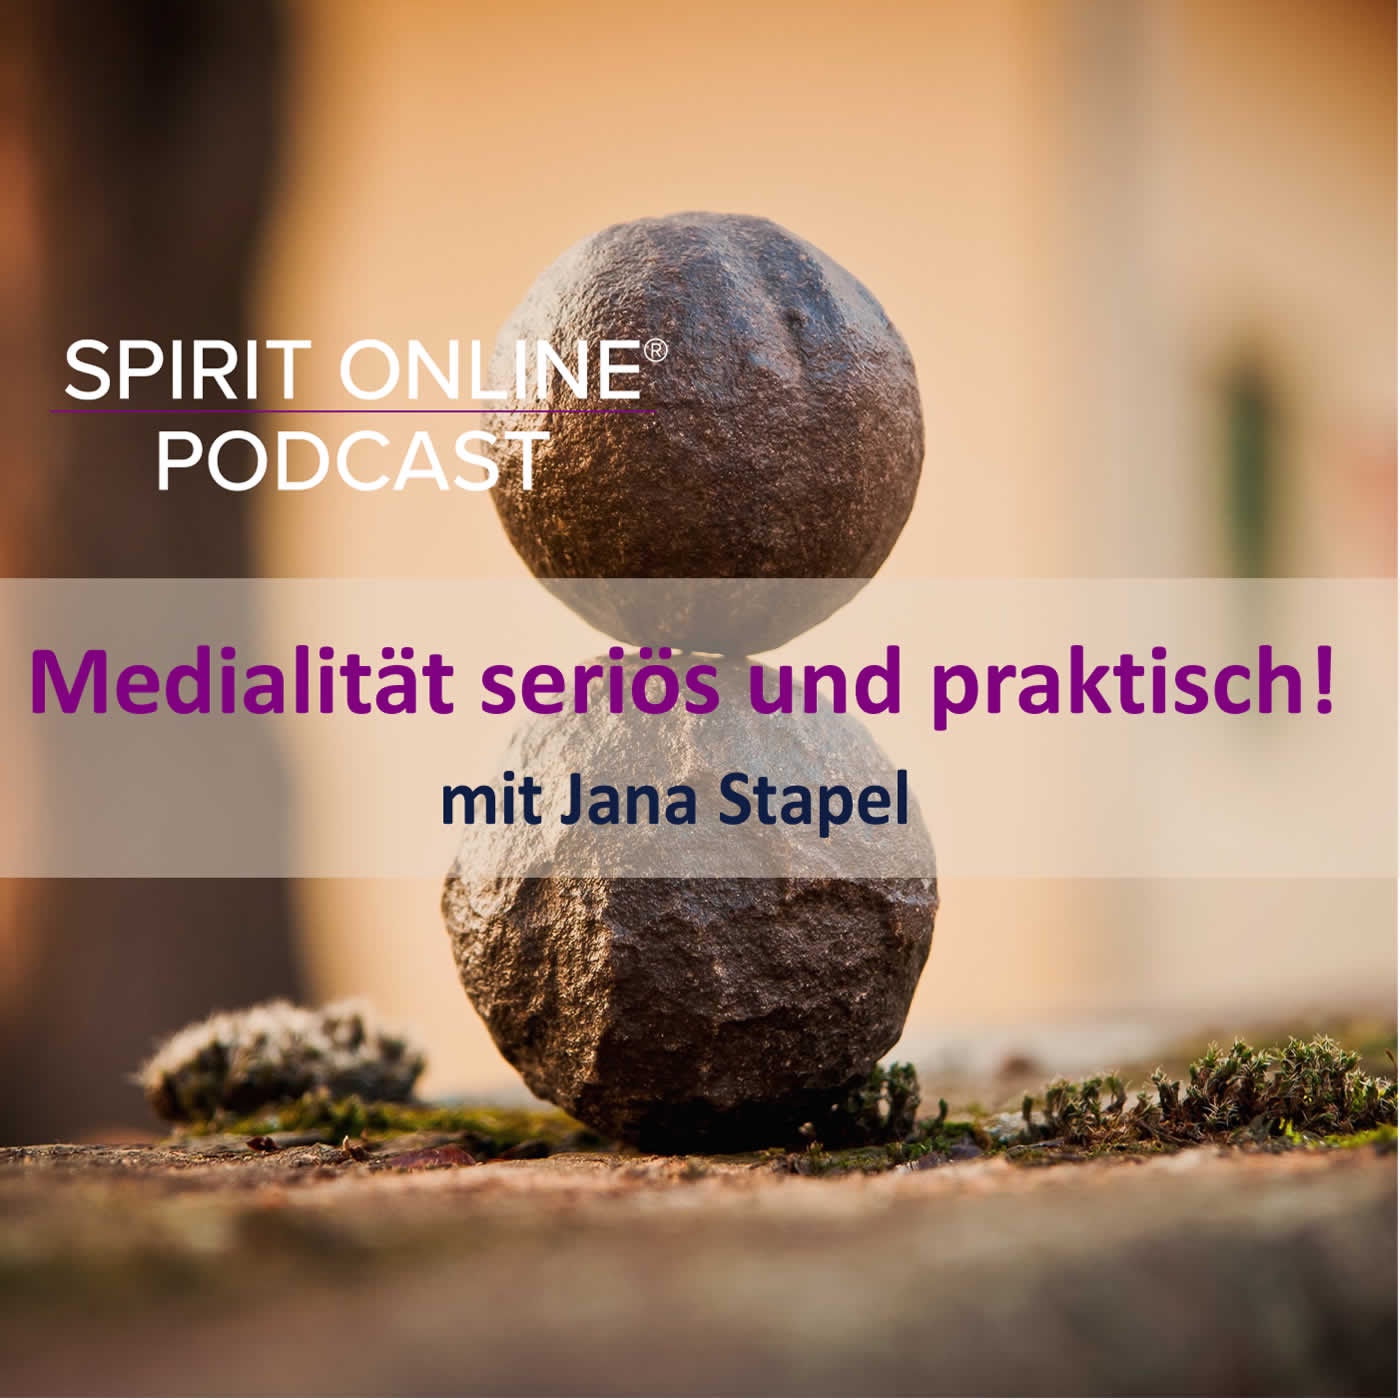 Medialität seriös und praktisch! mit Jana Stapel